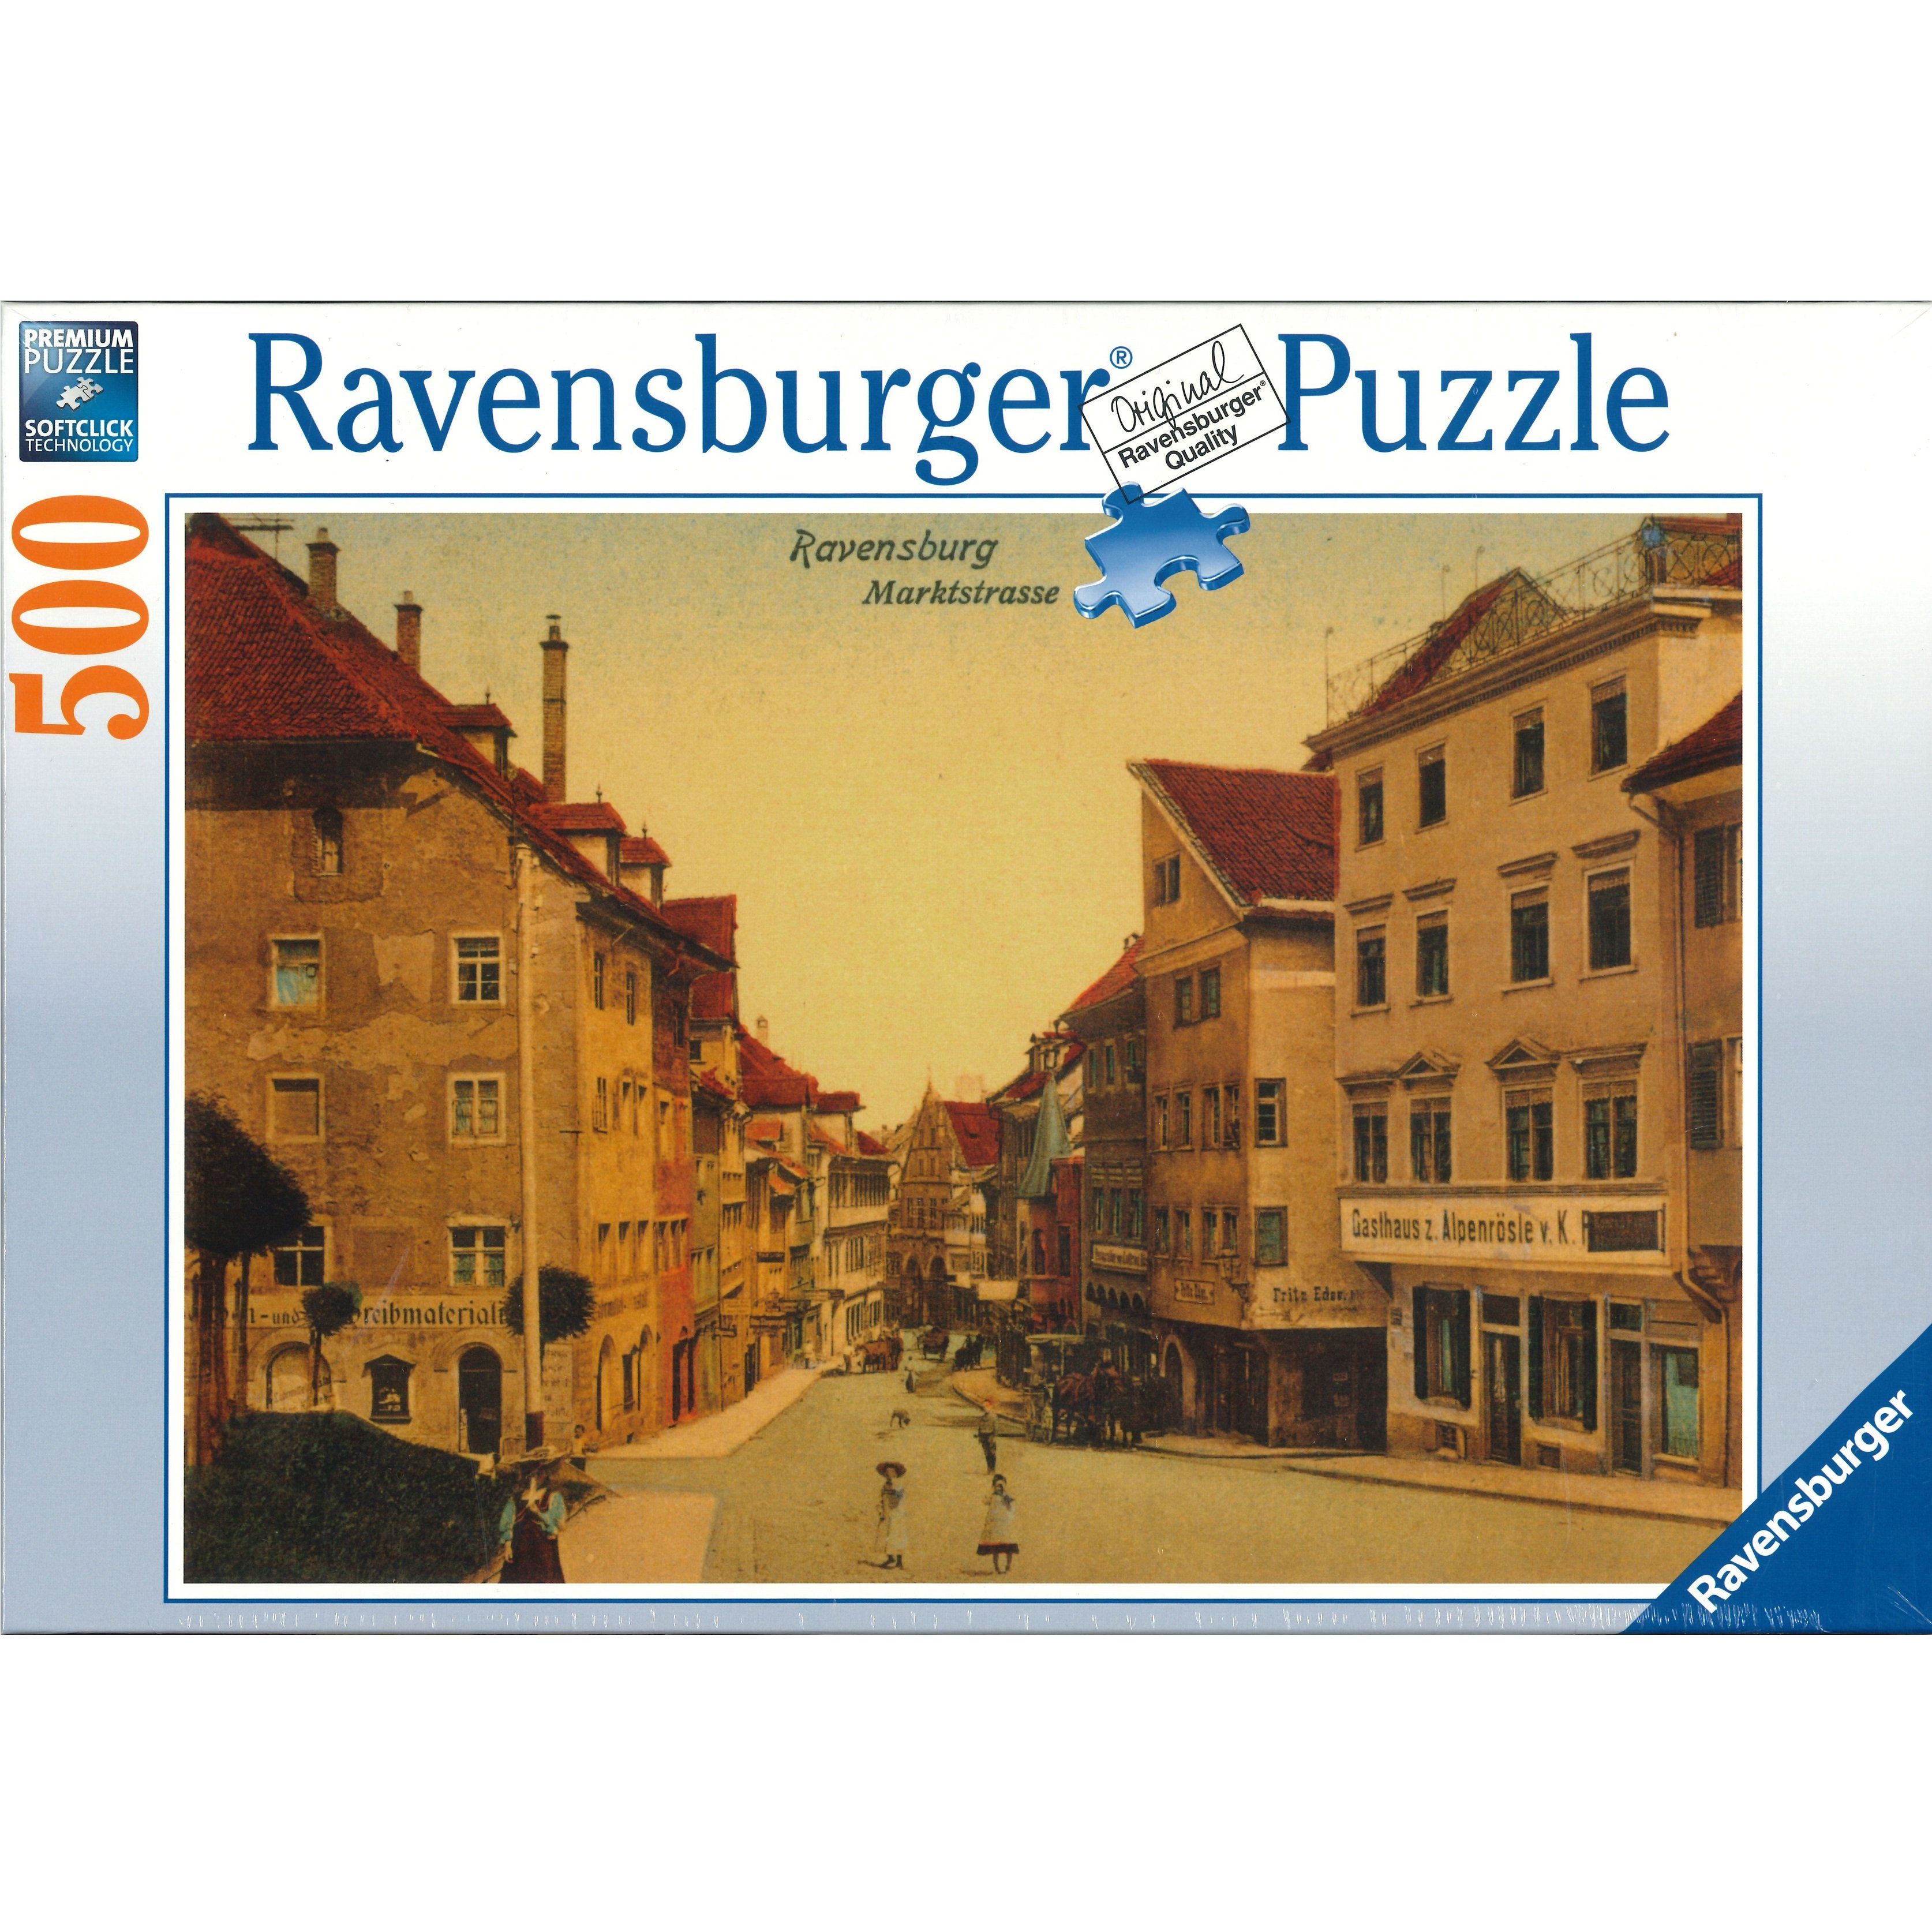 Ravensburger Puzzle Ravensburger - Ravensburg Marktstraße um 1900, 500 Teile Puzzle, 500 Puzzleteile